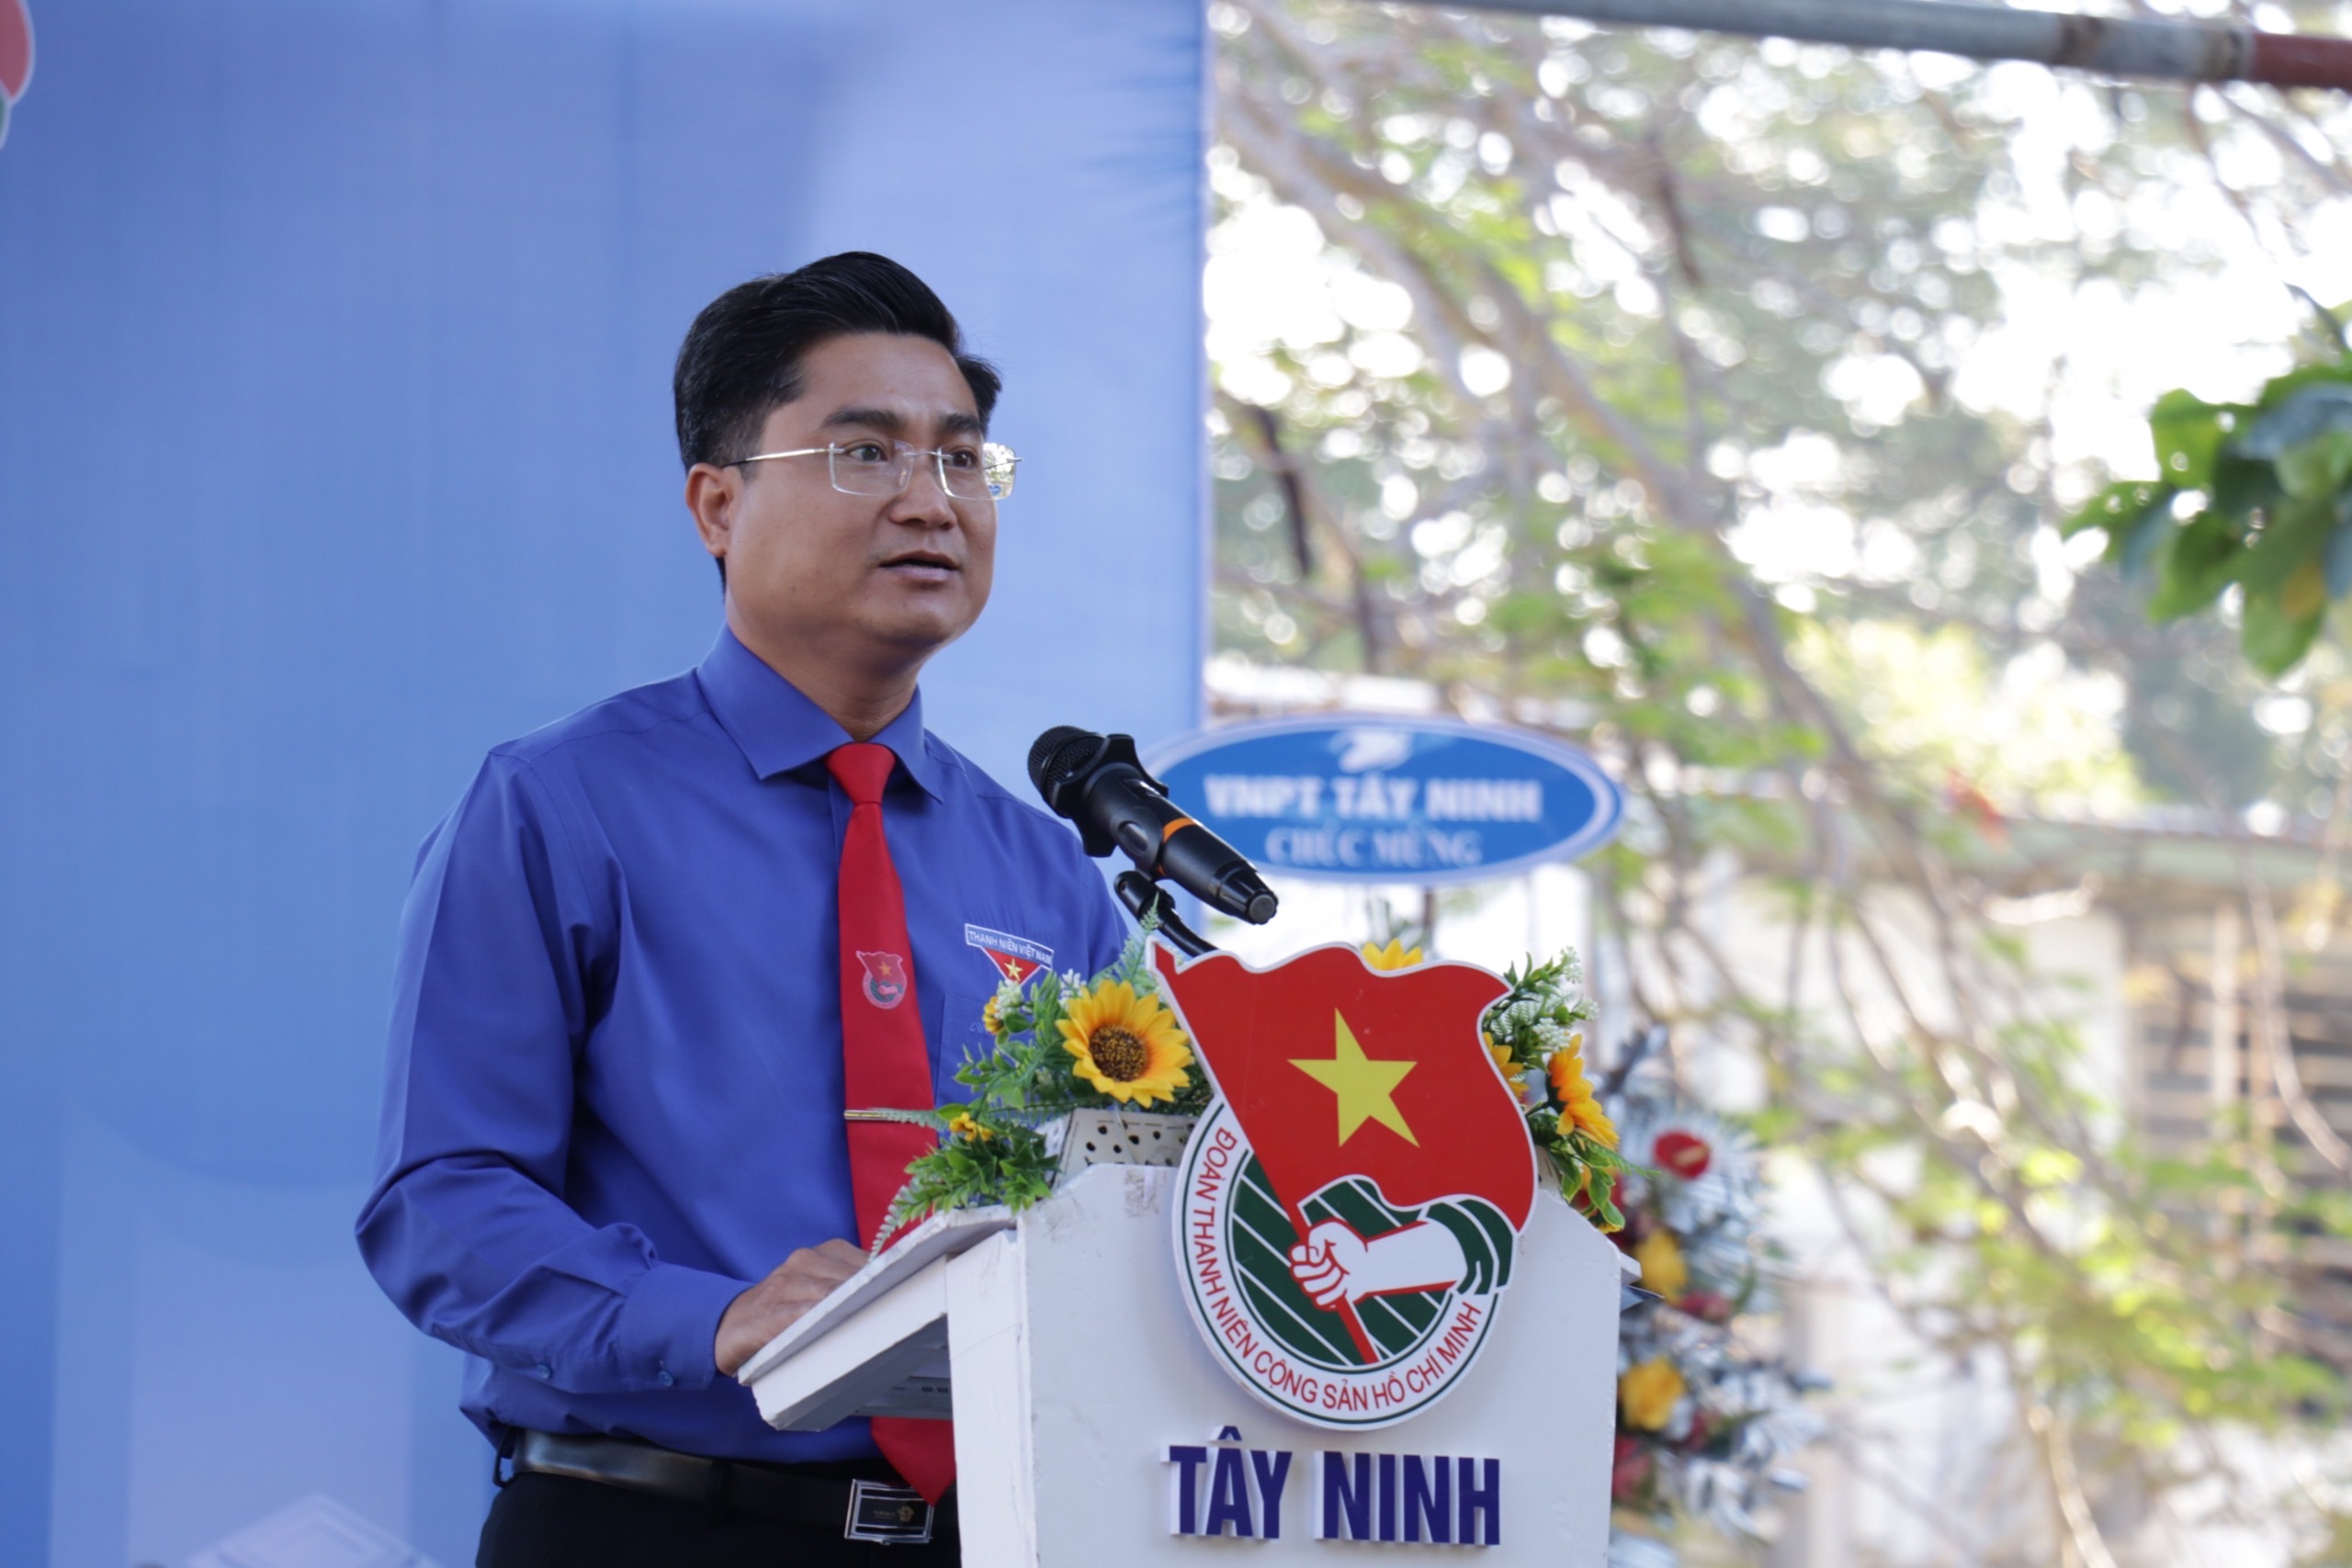 Tây Ninh chính thức khởi động Tháng Thanh niên năm 2023 với quyết tâm “Tuổi trẻ Tây Ninh vững tin tiến bước, xung kích chuyển đổi số”.